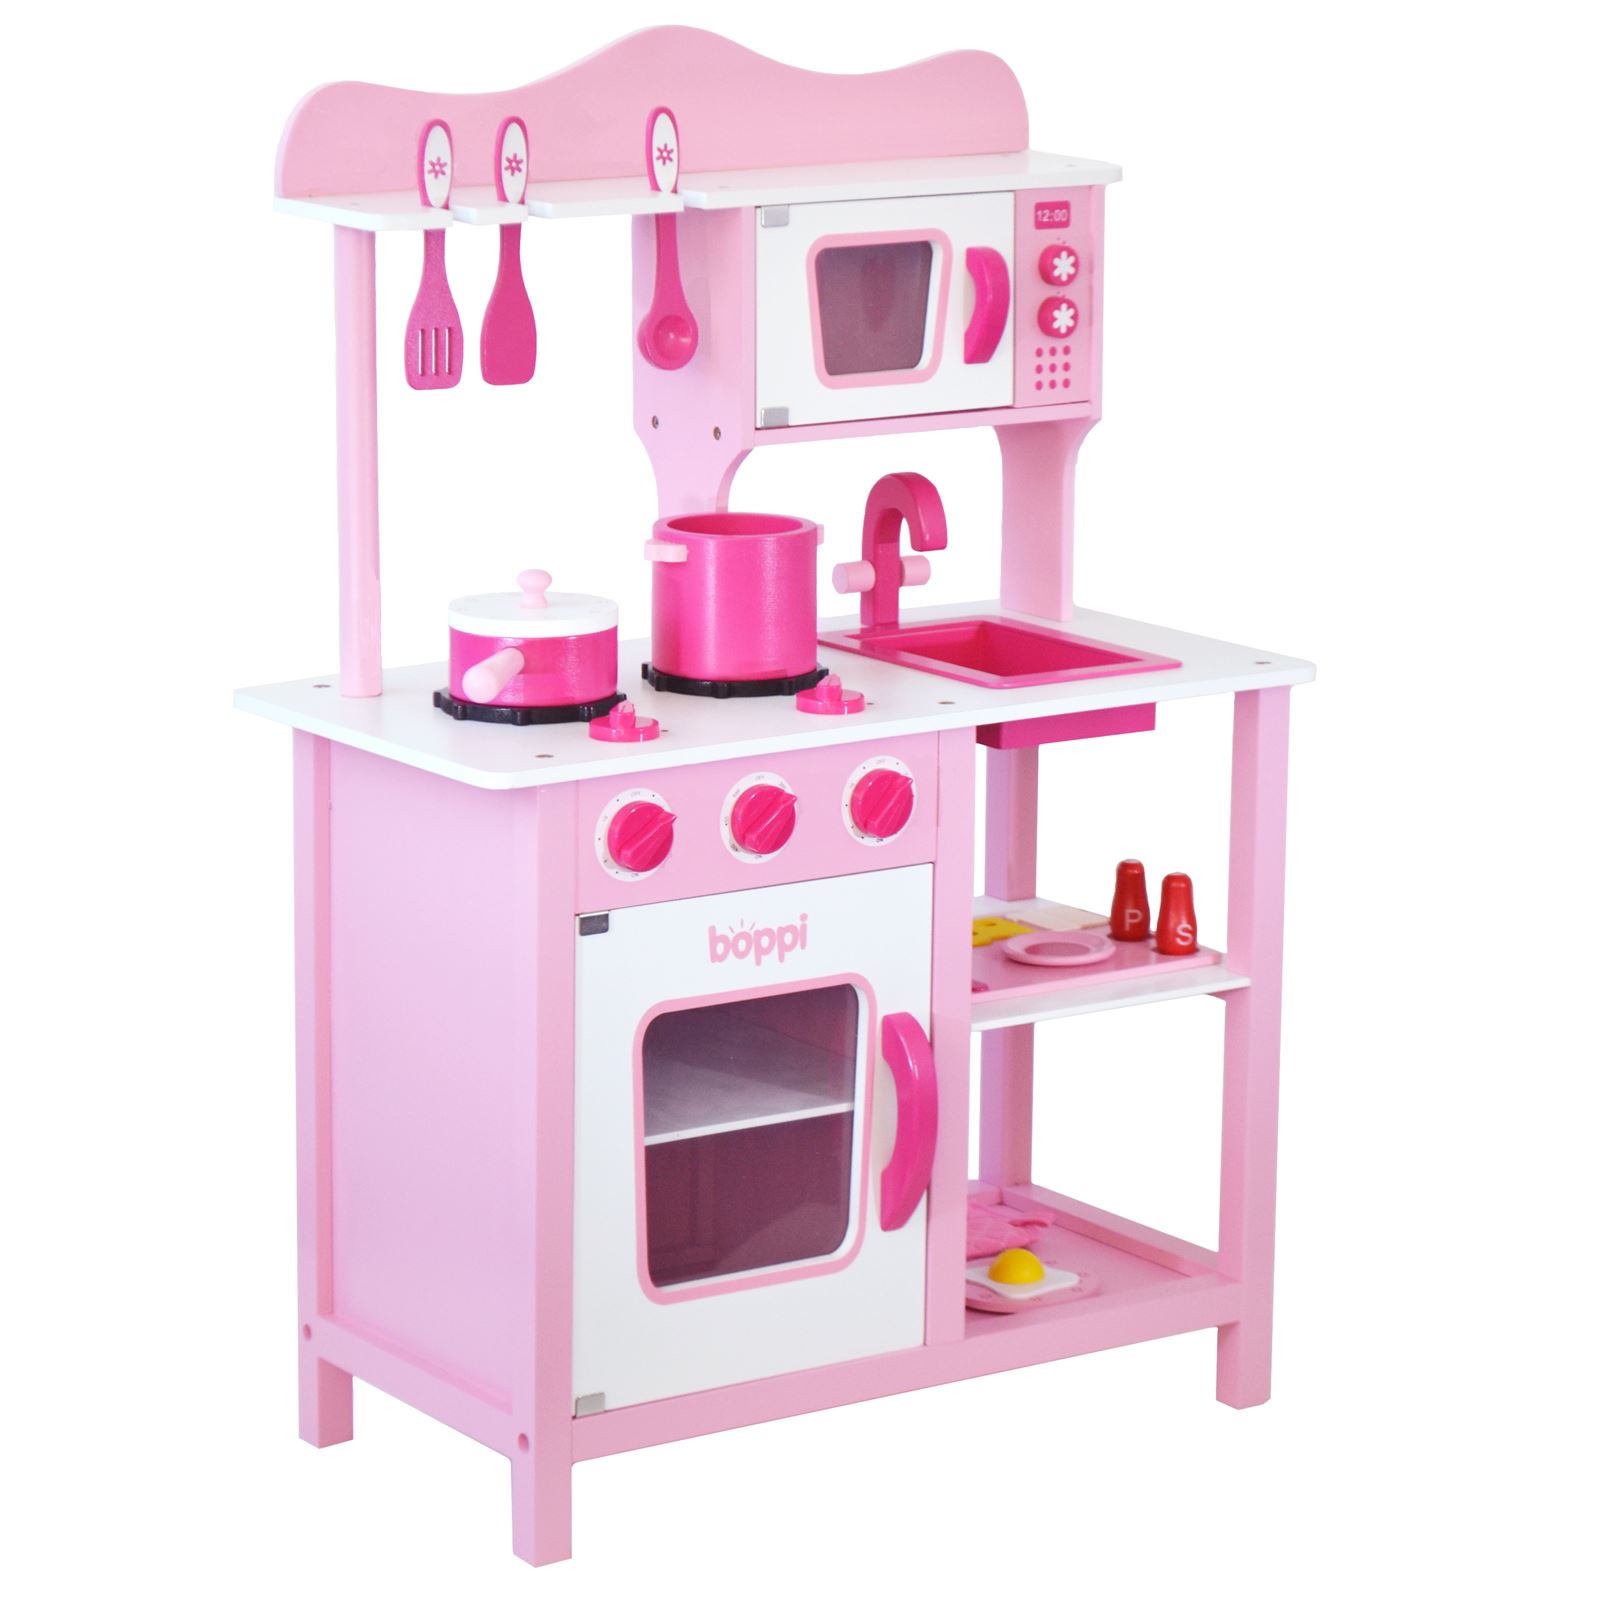 28tlg Kinderküche Spielküche SpielzeugKüche Küchengeräte Spielzeug Zubehör Rosa 